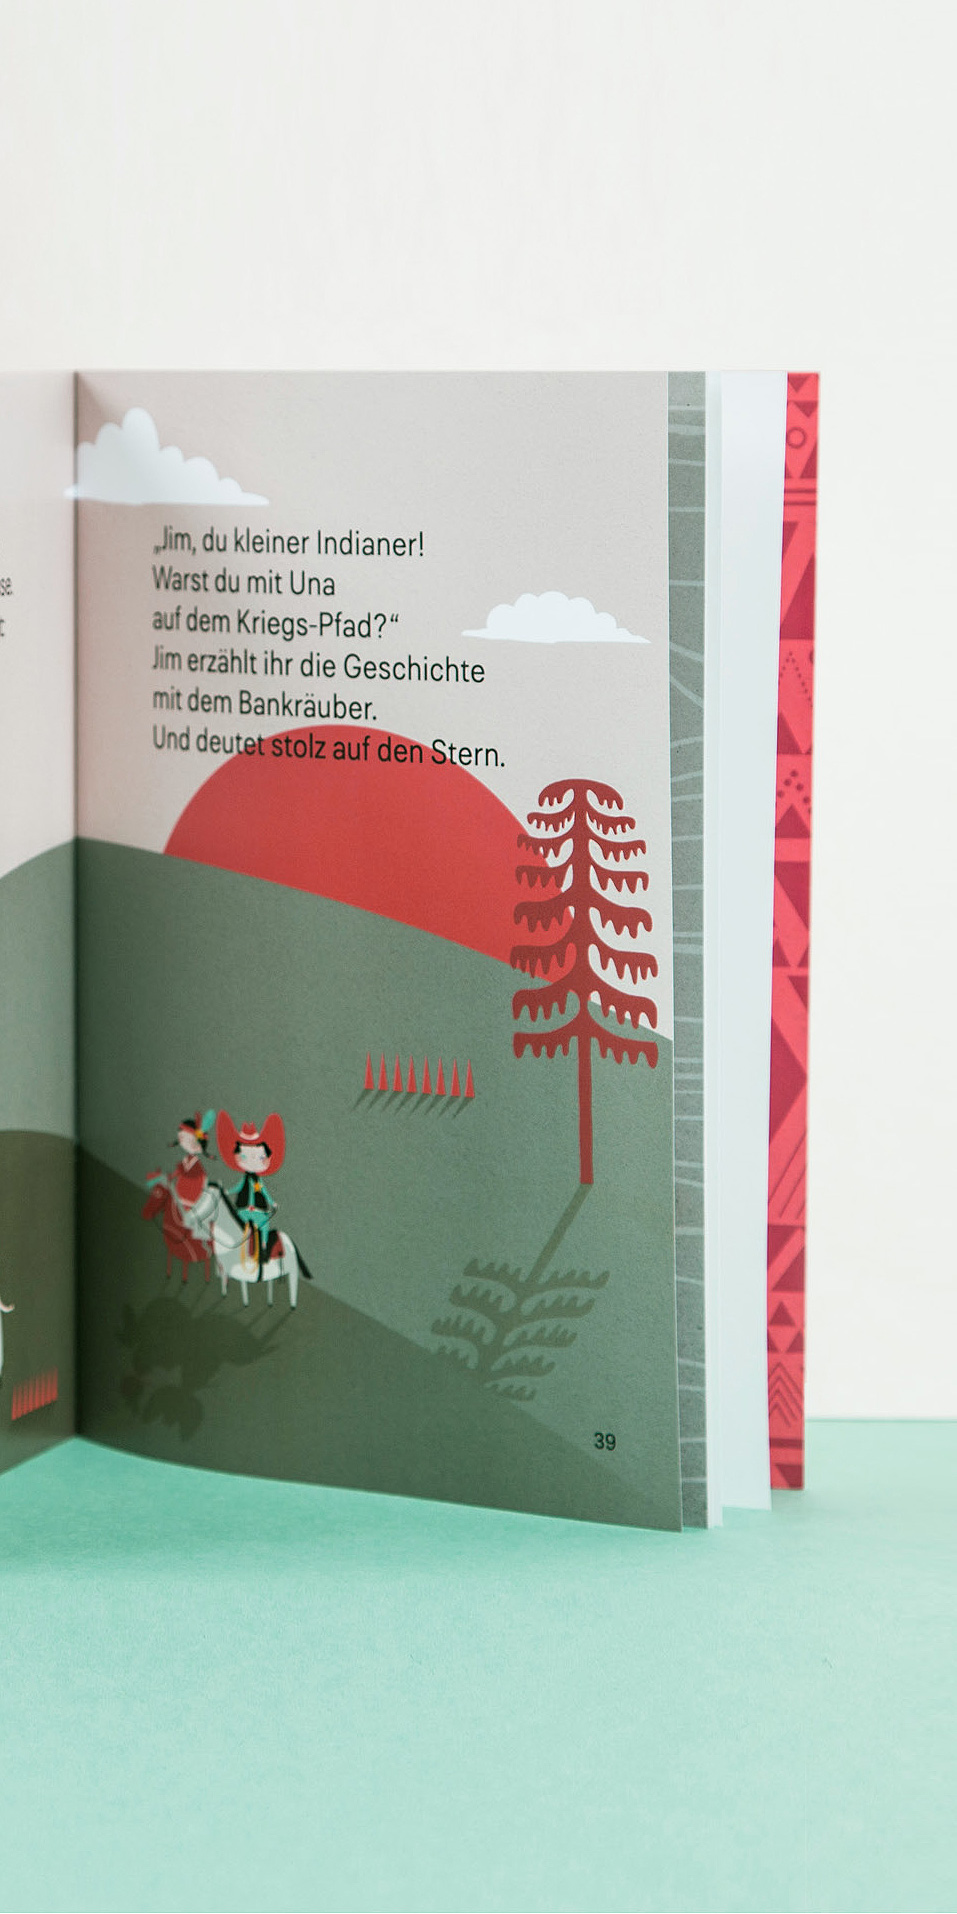 3DMBO-Studio-für-Gestaltung-Pforzheim-Cowboy-und-Indiander-das-geheimnisvolle-lasso-illustration-kinderbuch